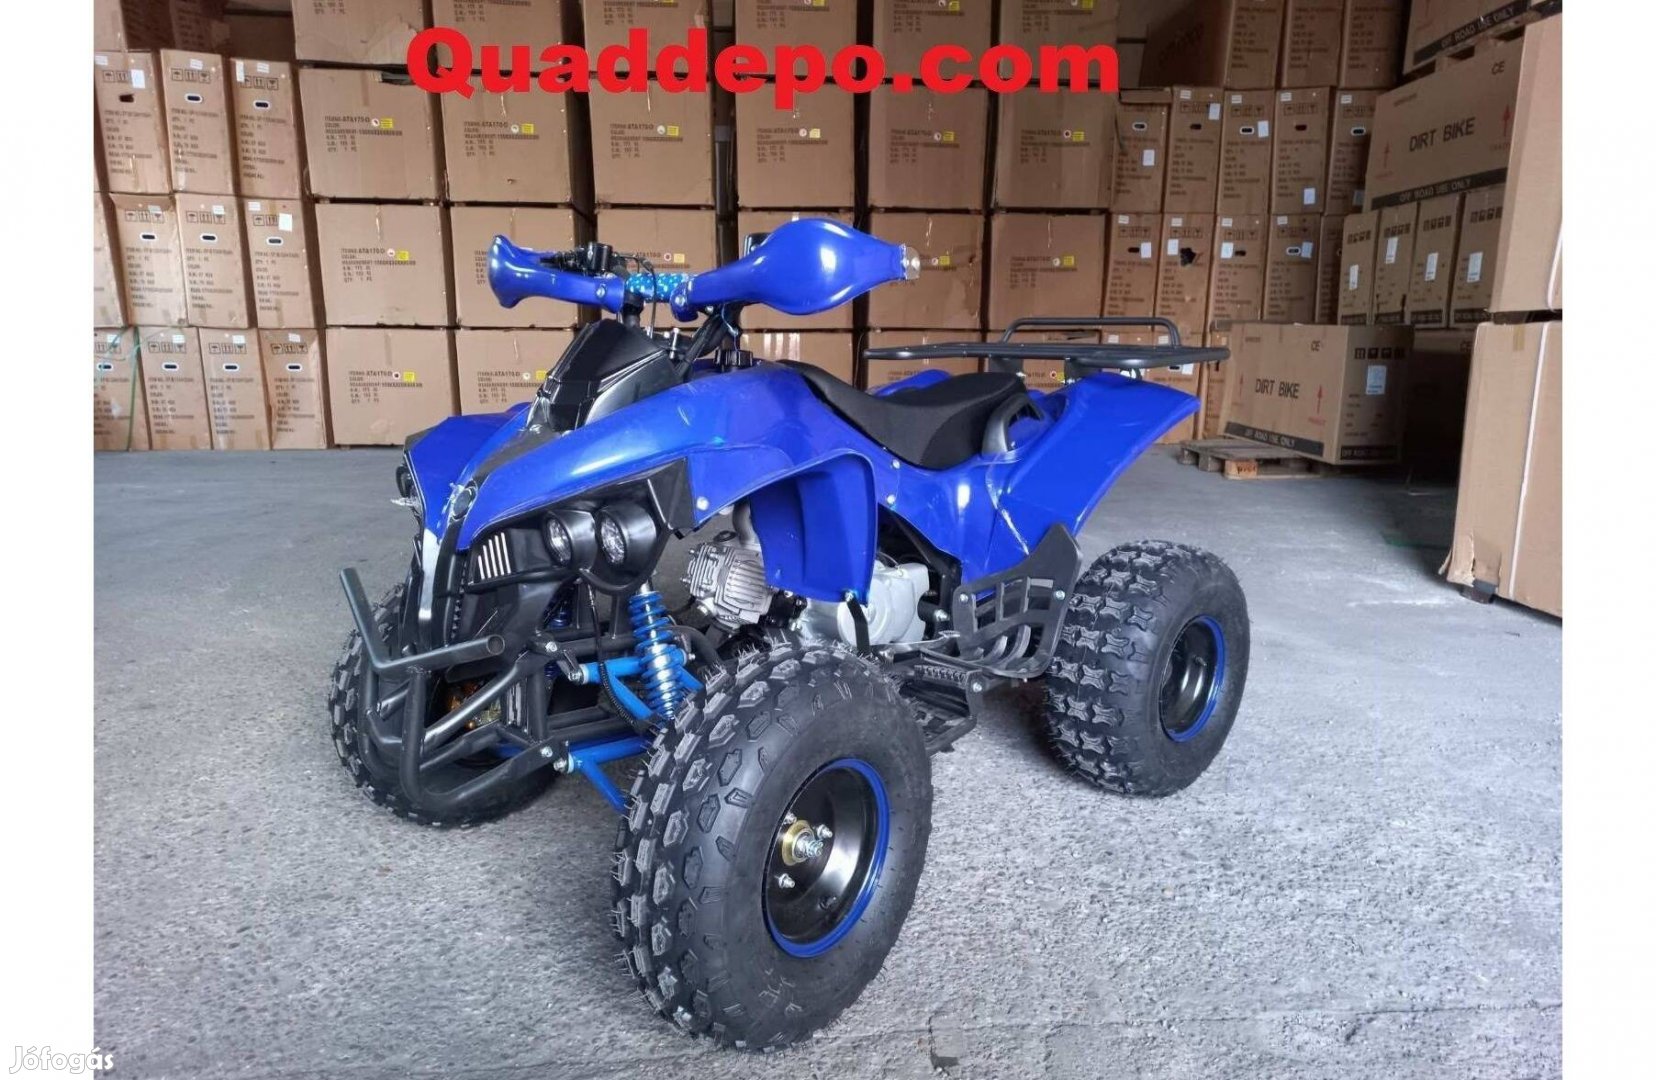 Kxd 008 gyerek quad 125cc blue color